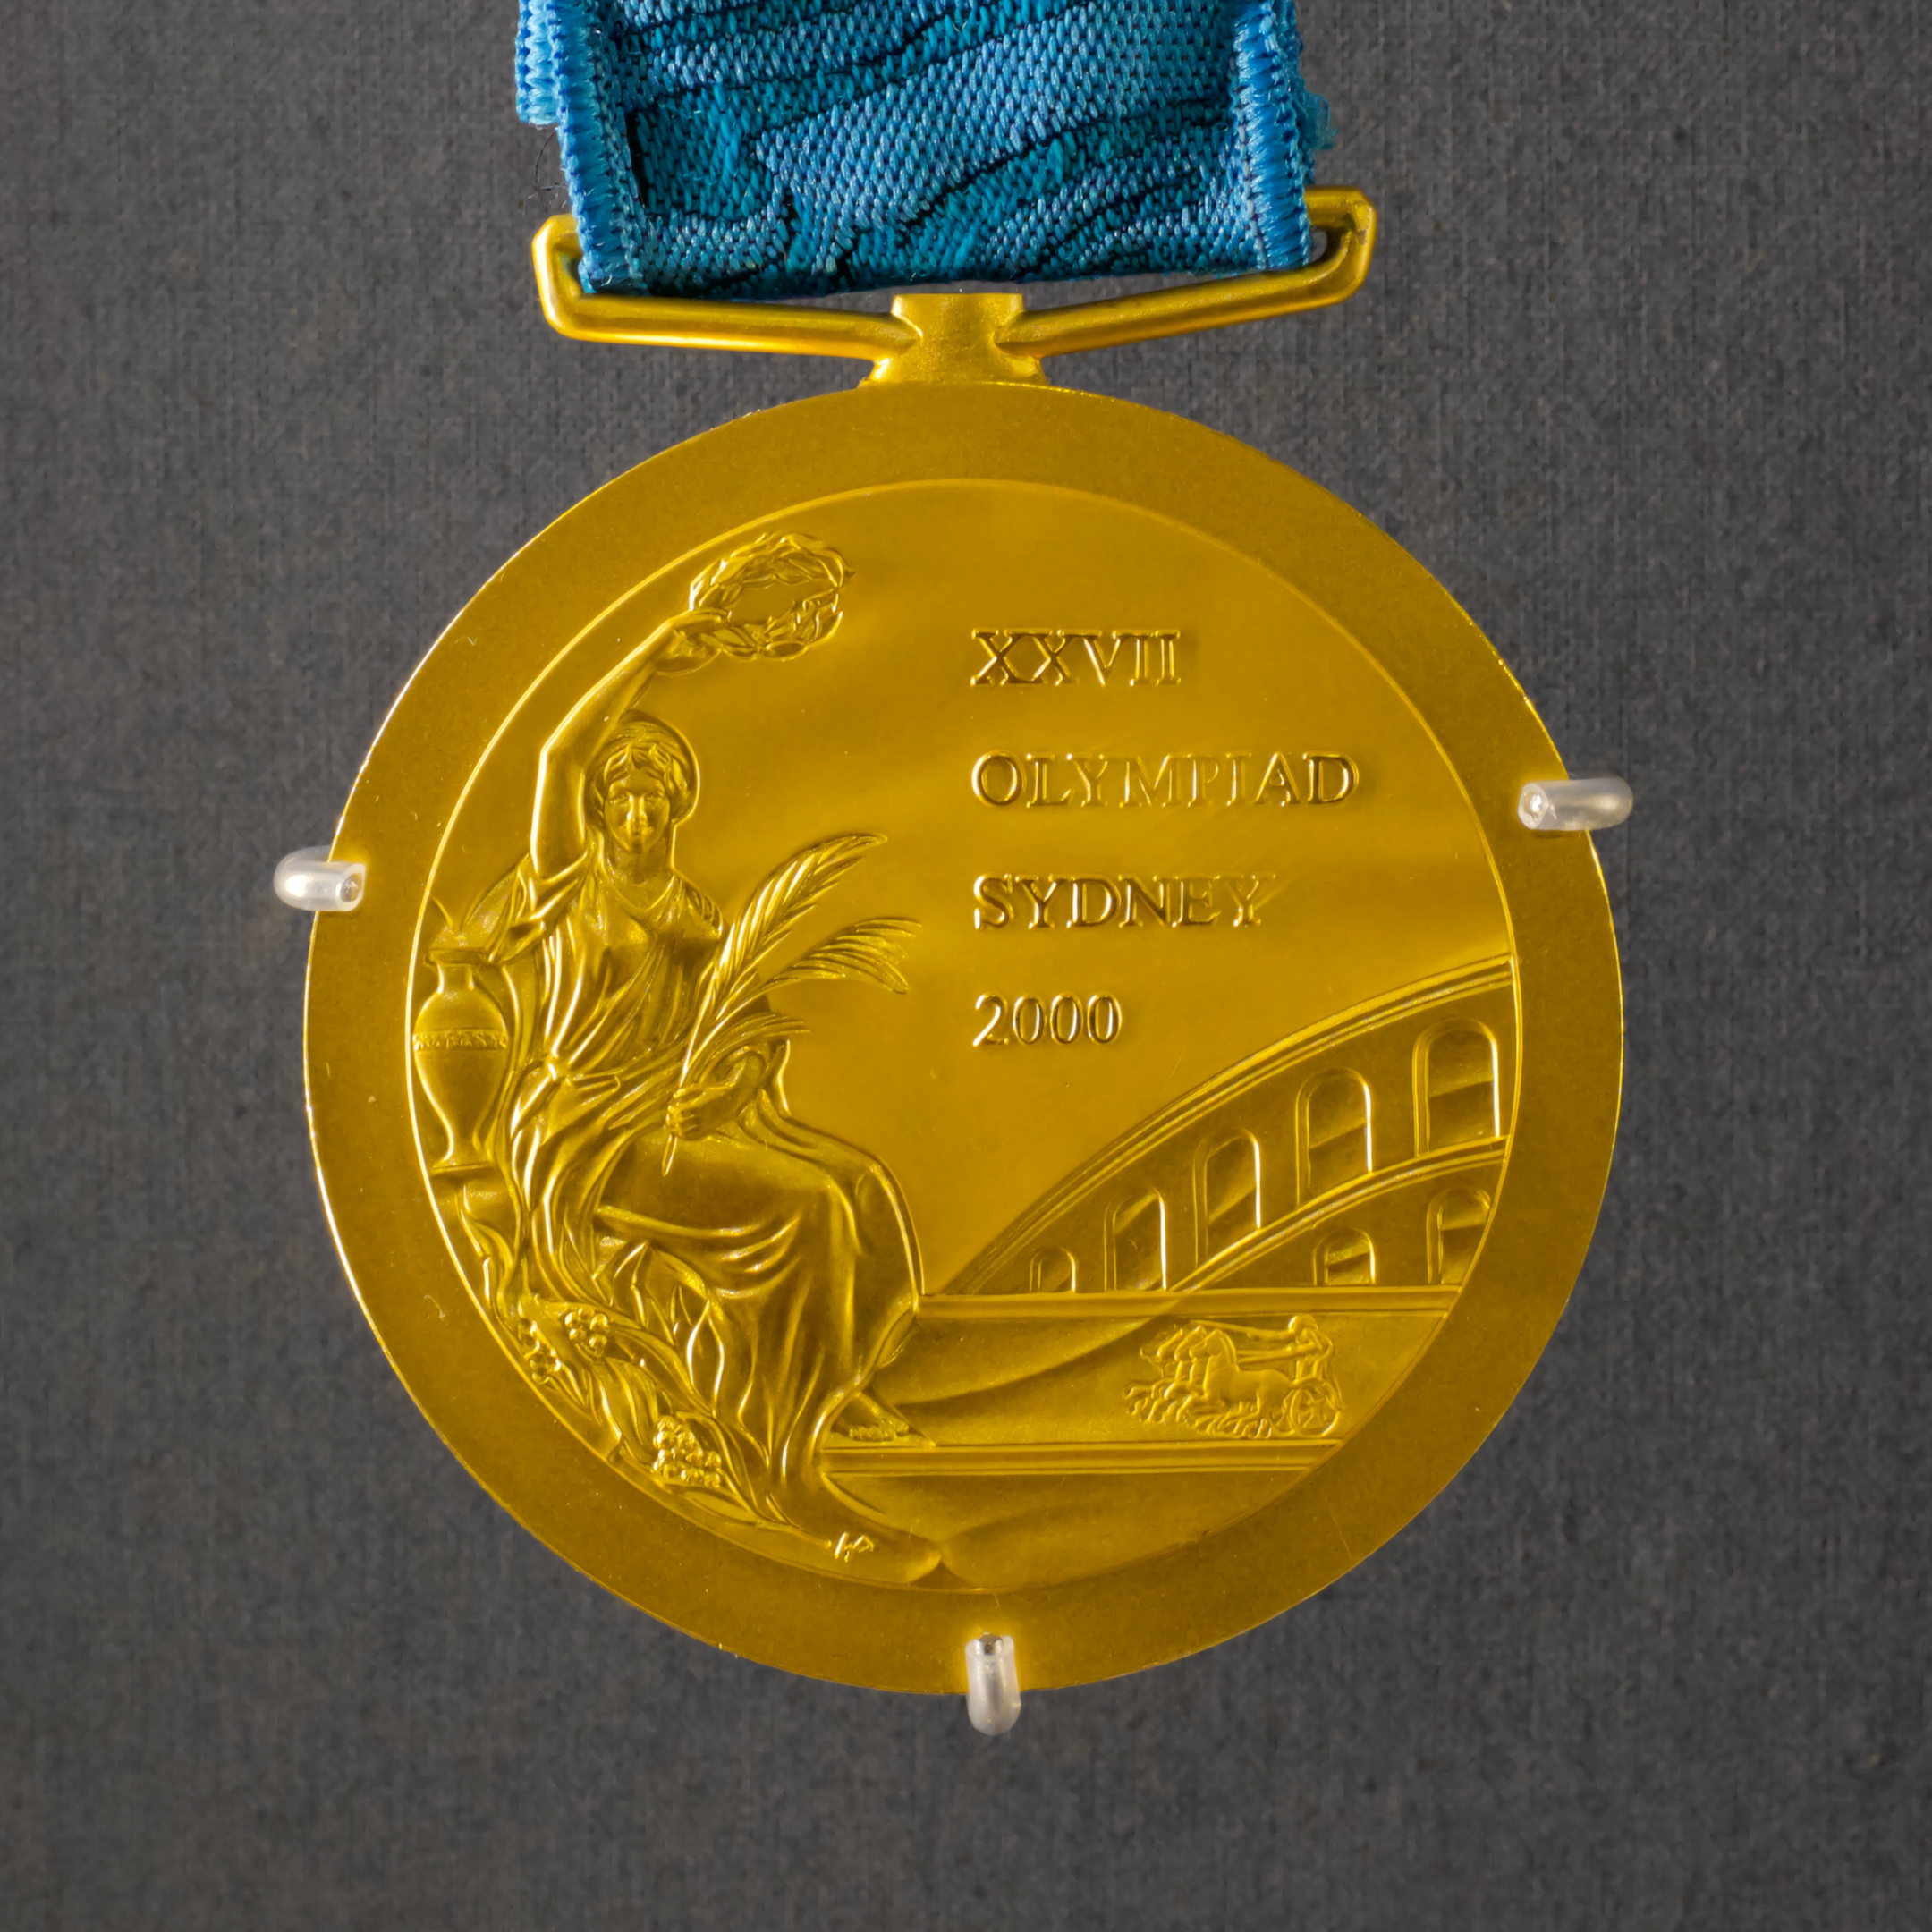 Medalha olímpica